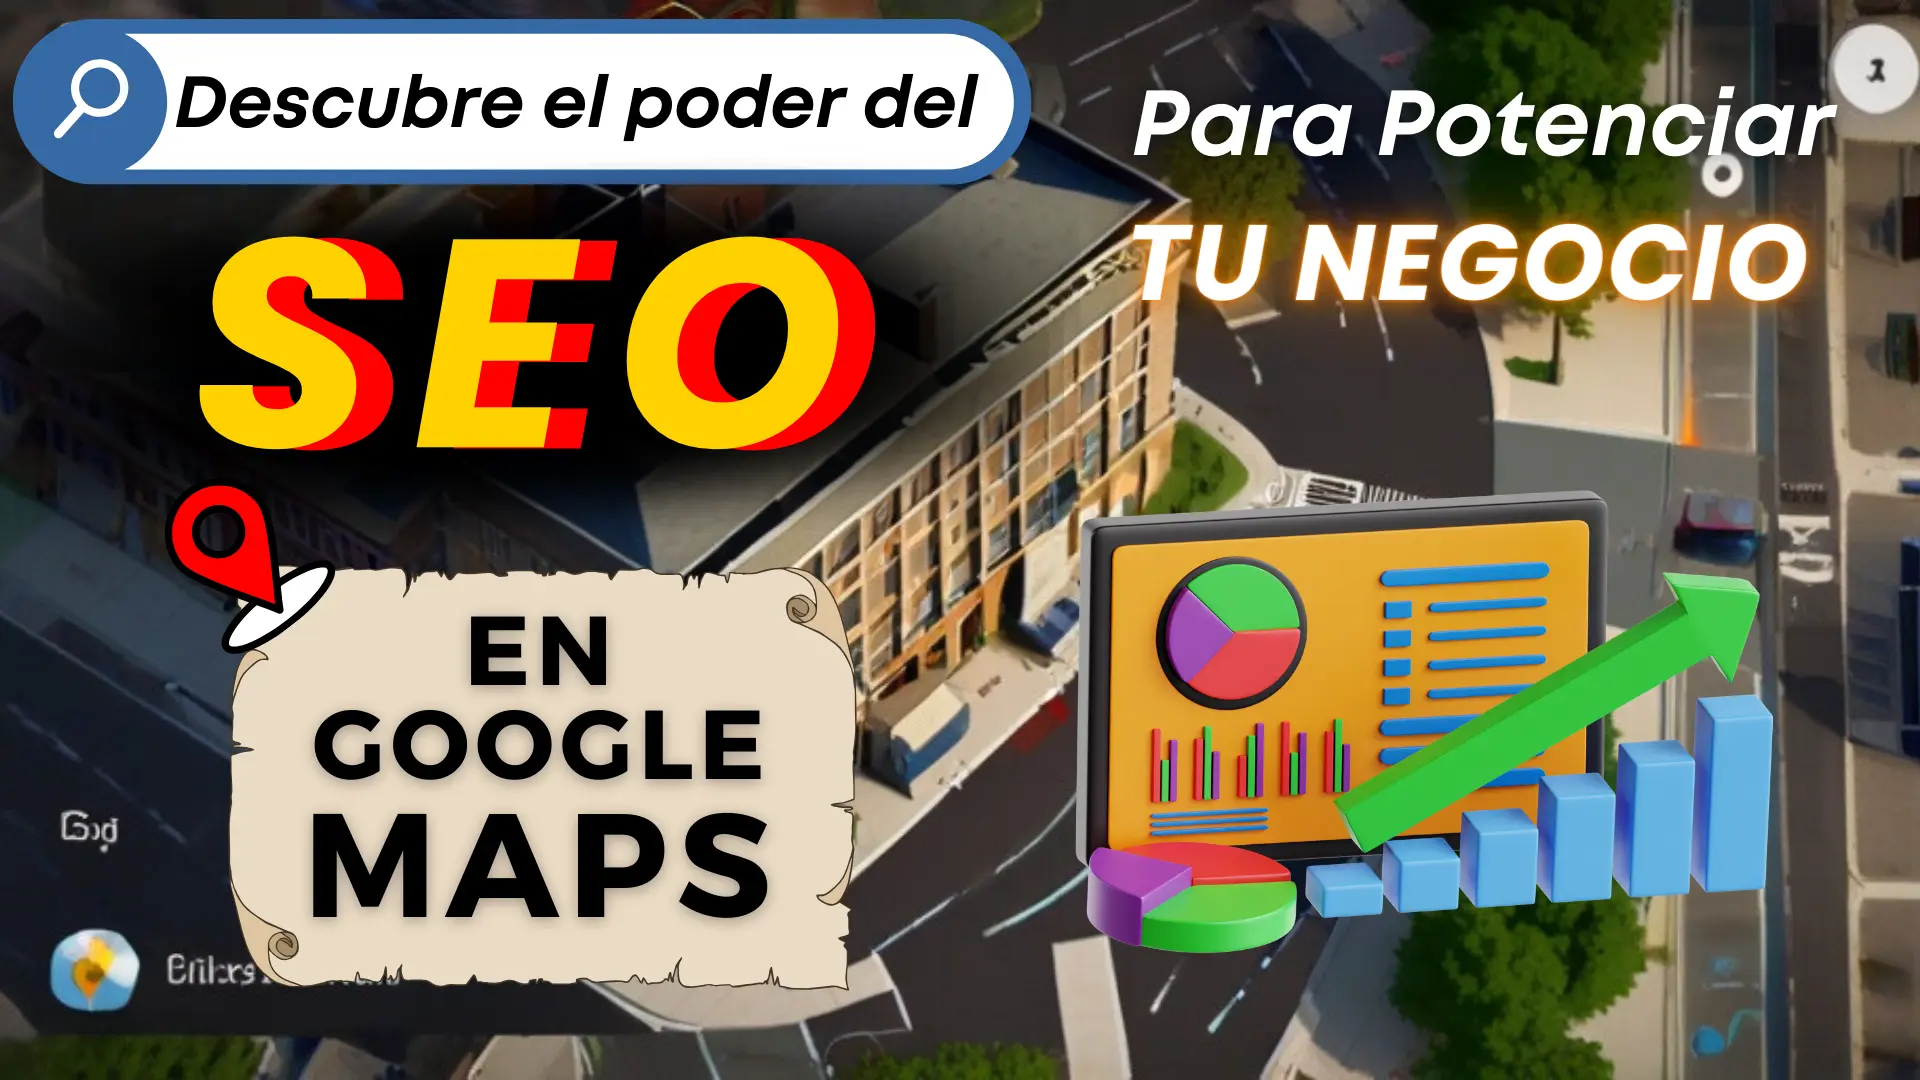 Descubre el poder del SEO en Google Maps para Potenciar tu Negocio